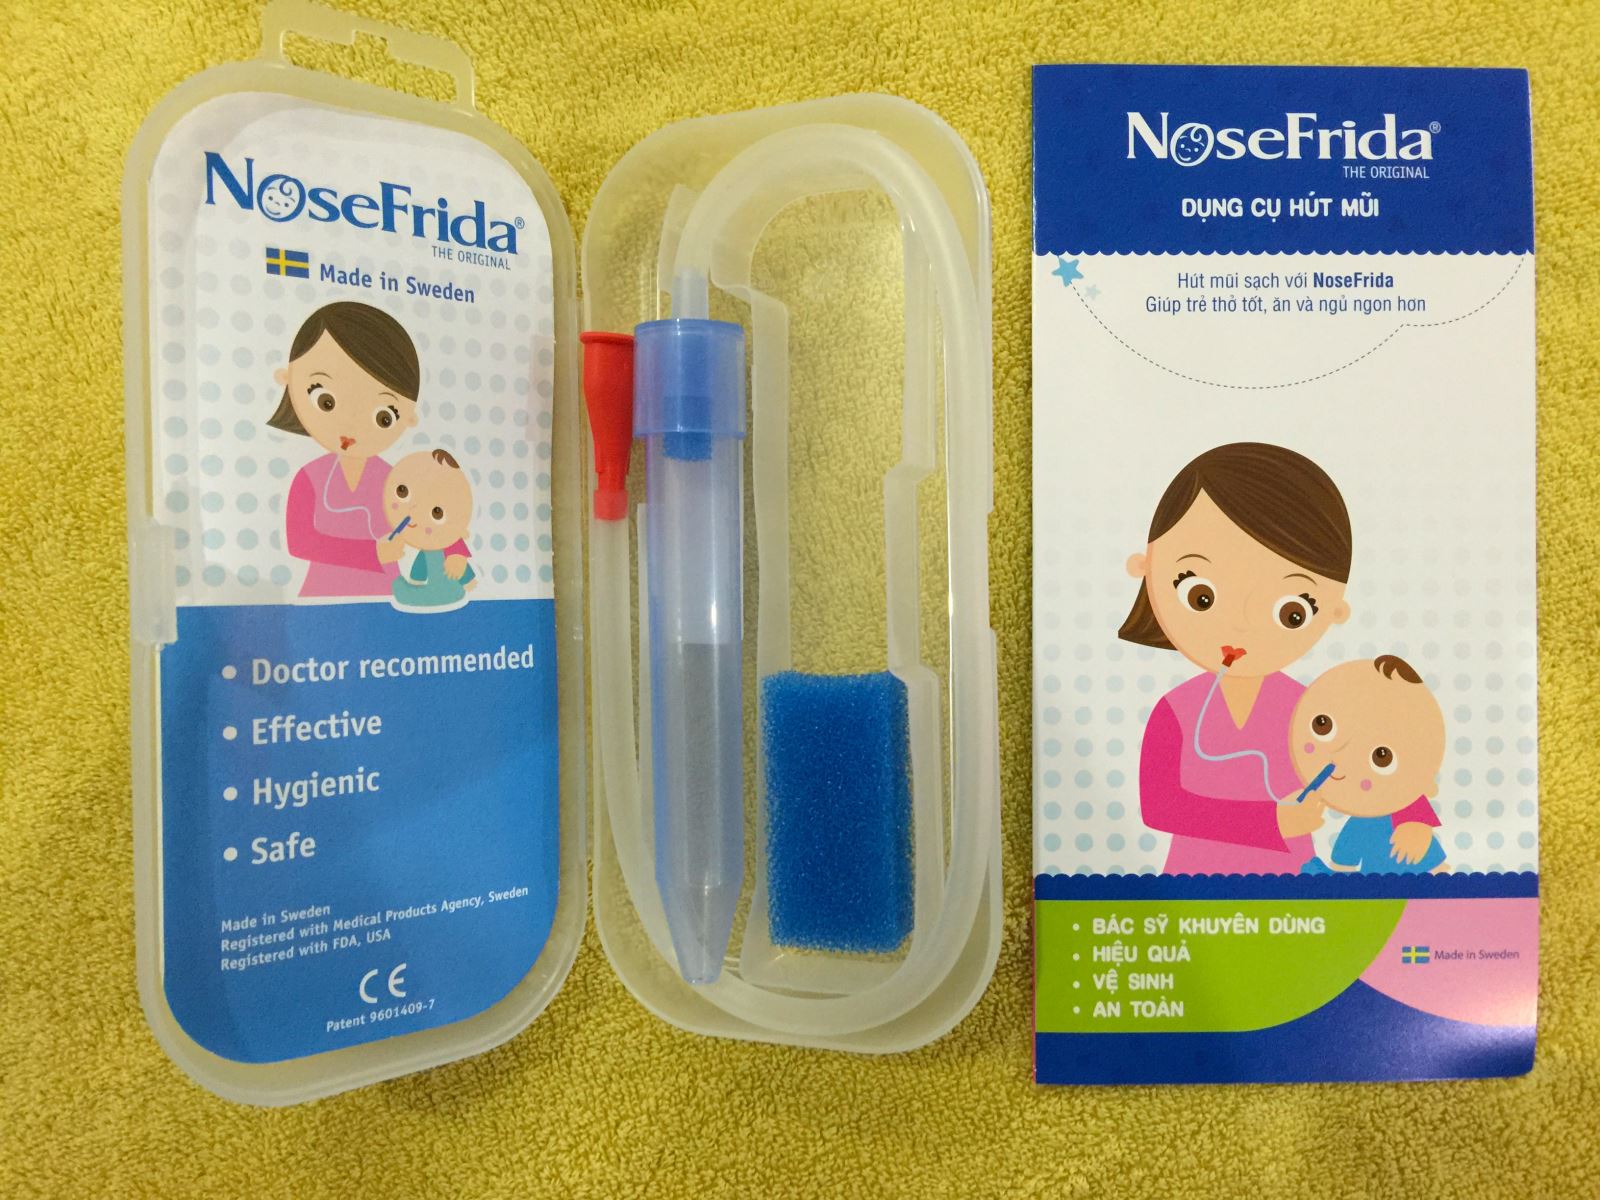 dụng cụ hút mũi Nosefrida, hút mũi Nosefrida, hút mũi Nosefrida cho bé